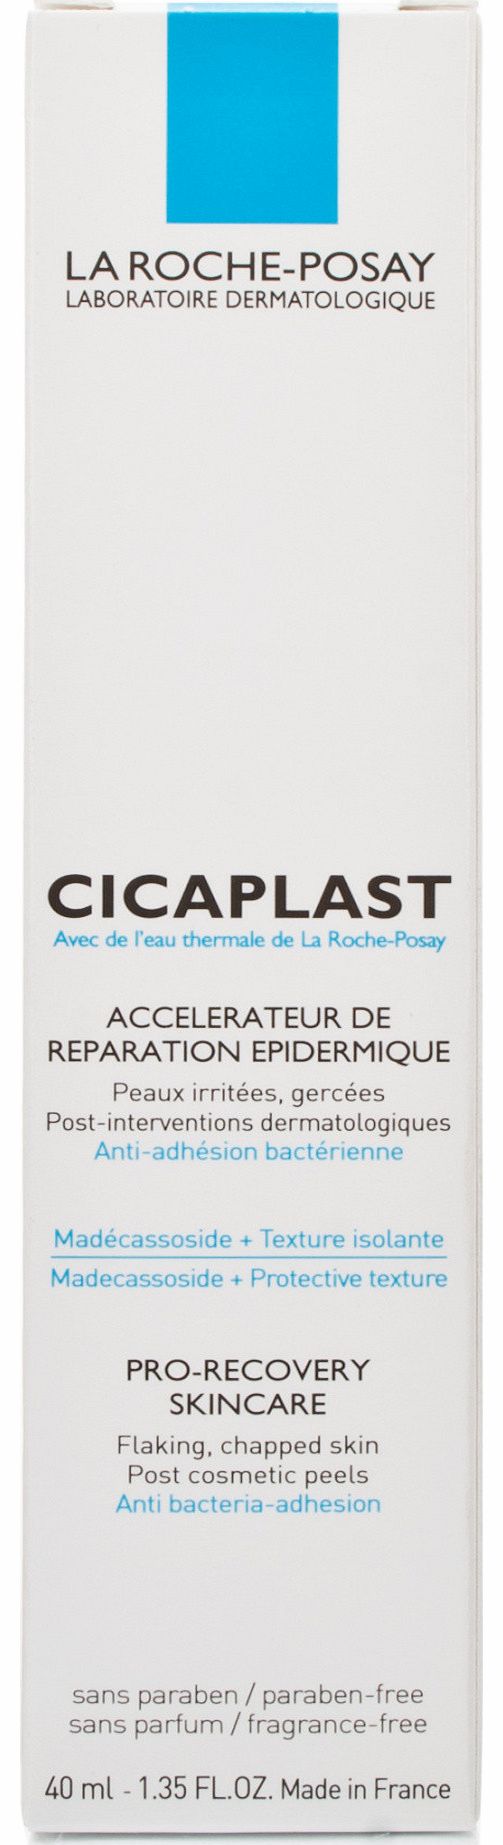 La Roche Posay Cicaplast Pro-Recovery Skincare